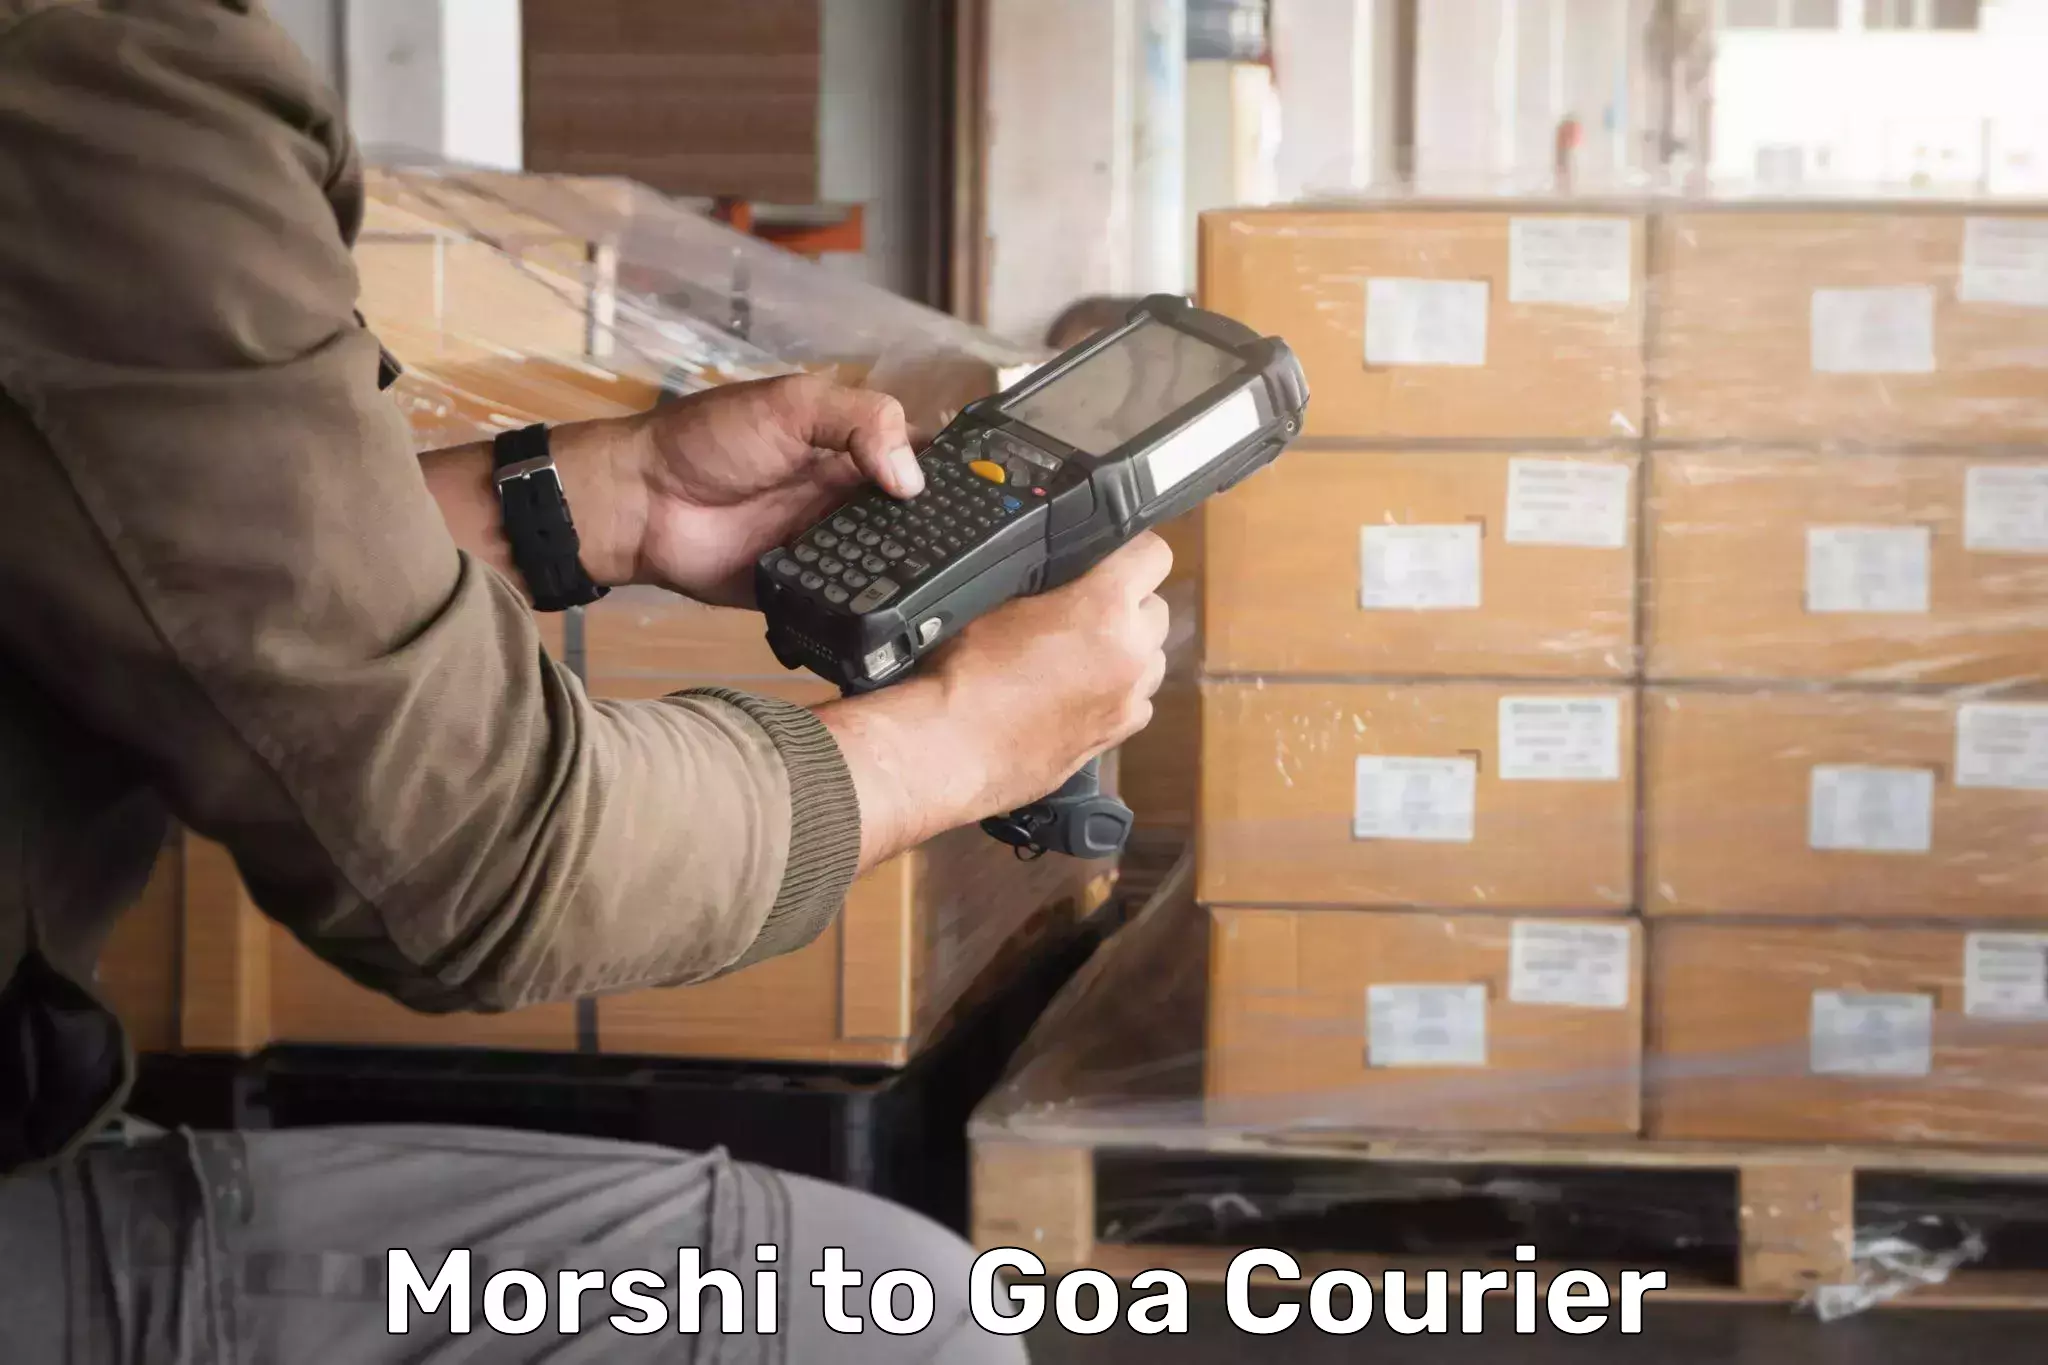 Express courier facilities Morshi to Goa